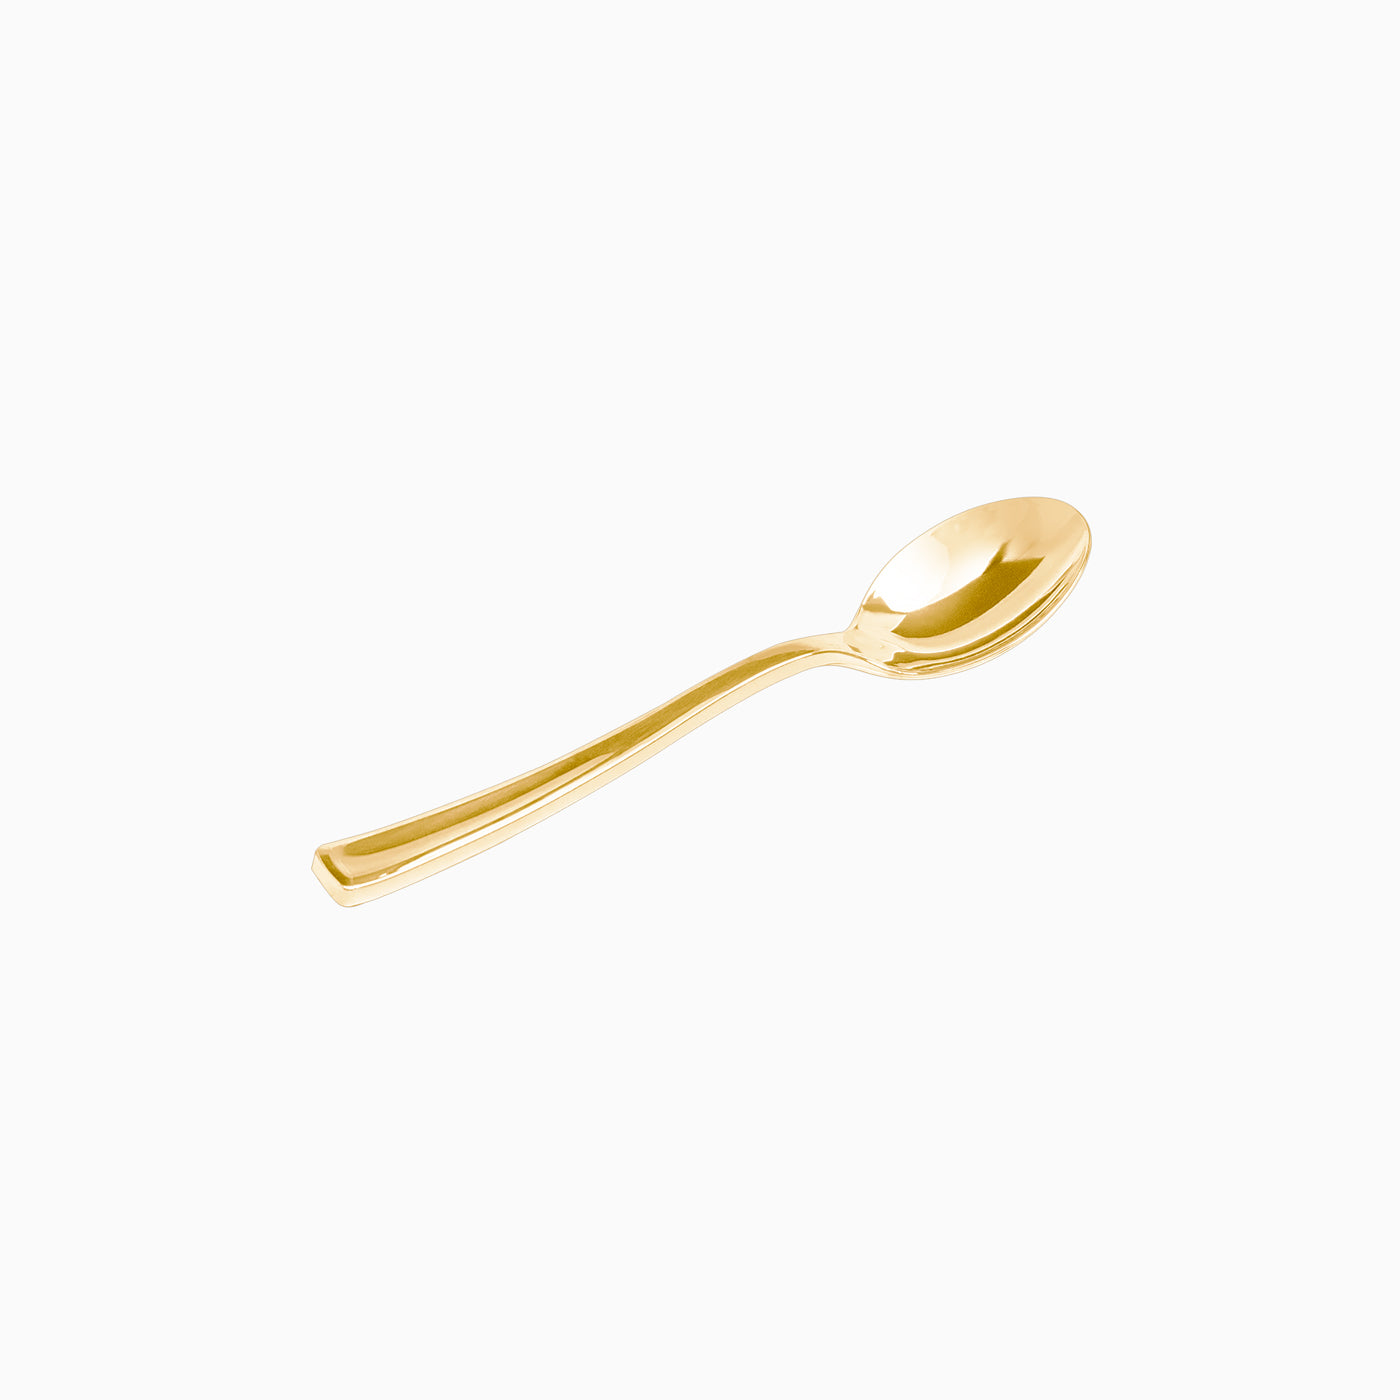 Wiederverwendbares Plastik Teelöffel 13 cm Metallic Gold